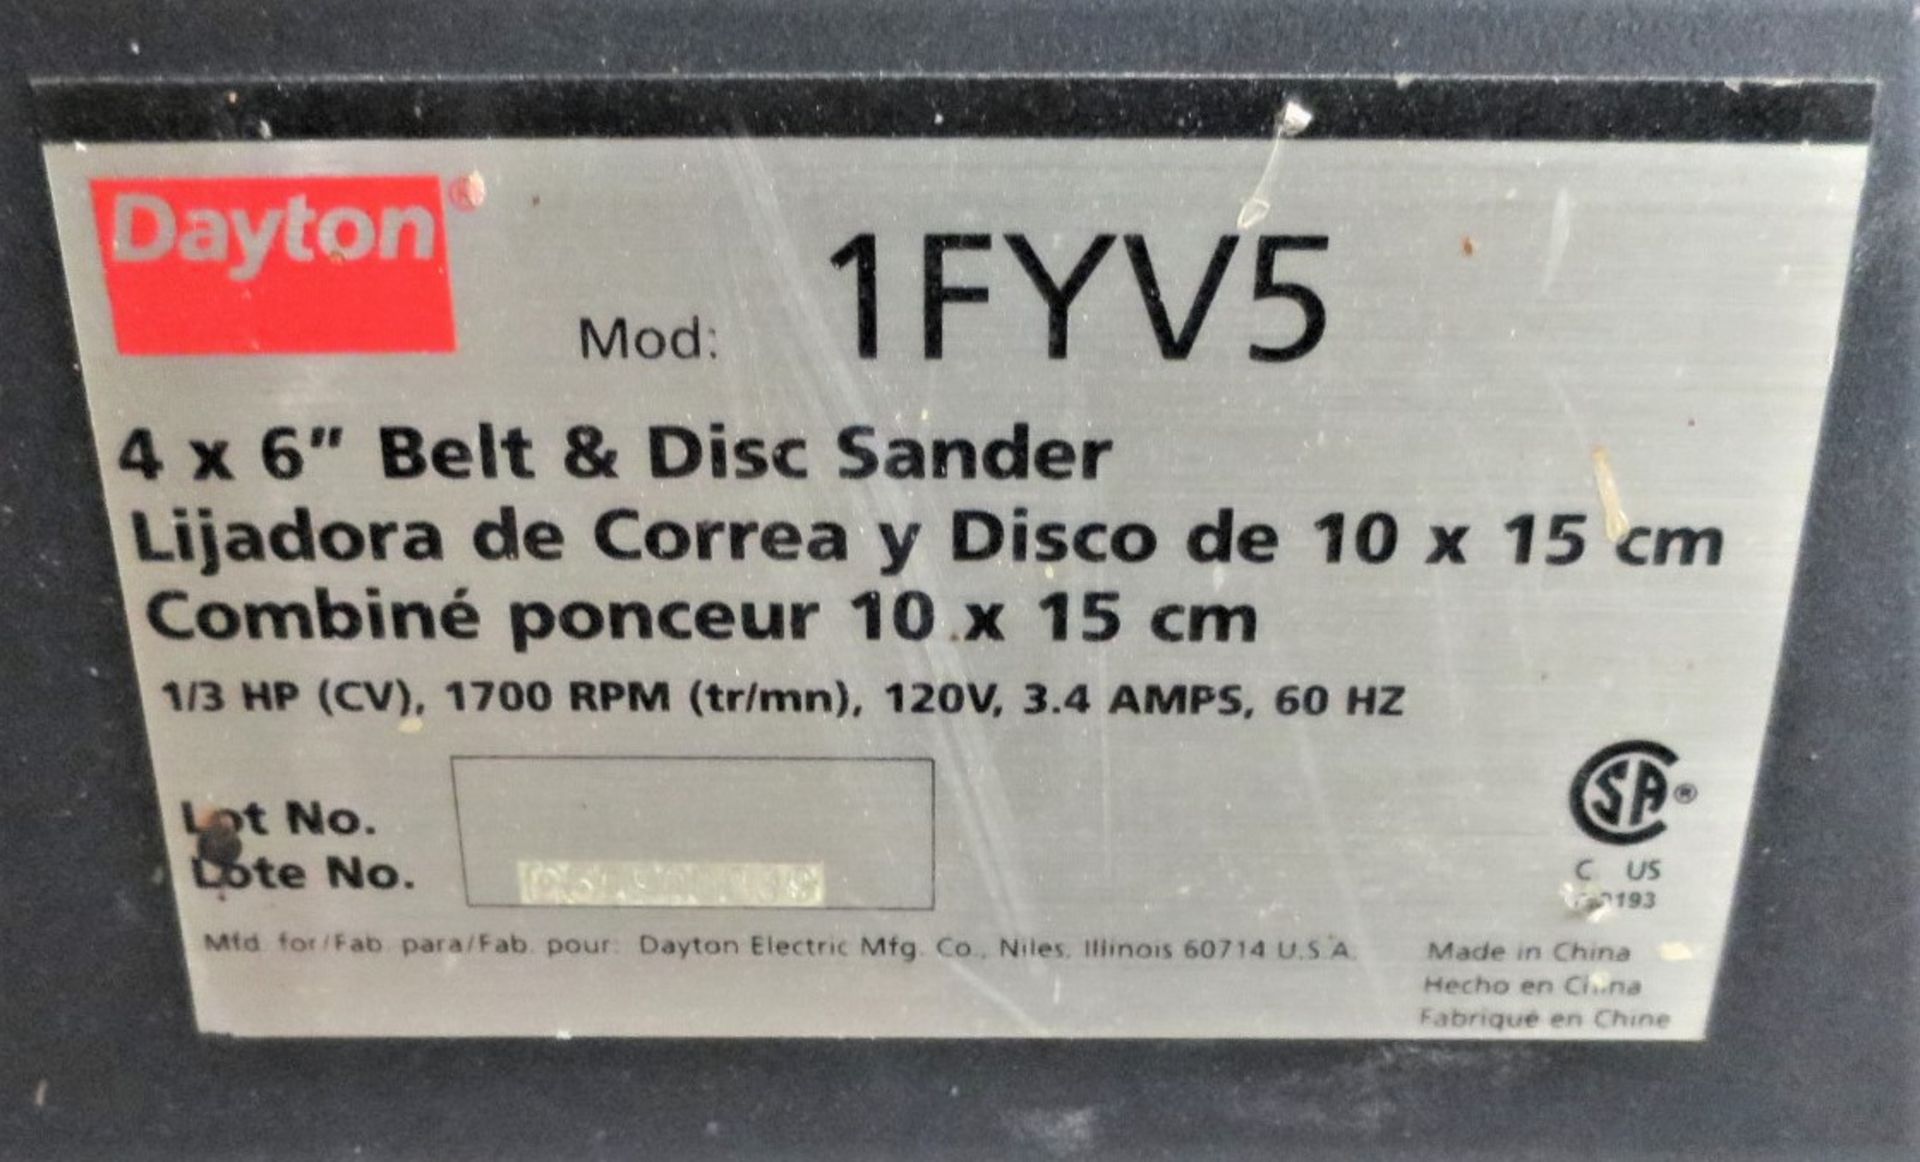 Dayton Model 1FYV5 4 x 6" Belt and Disc Sander - Image 2 of 2